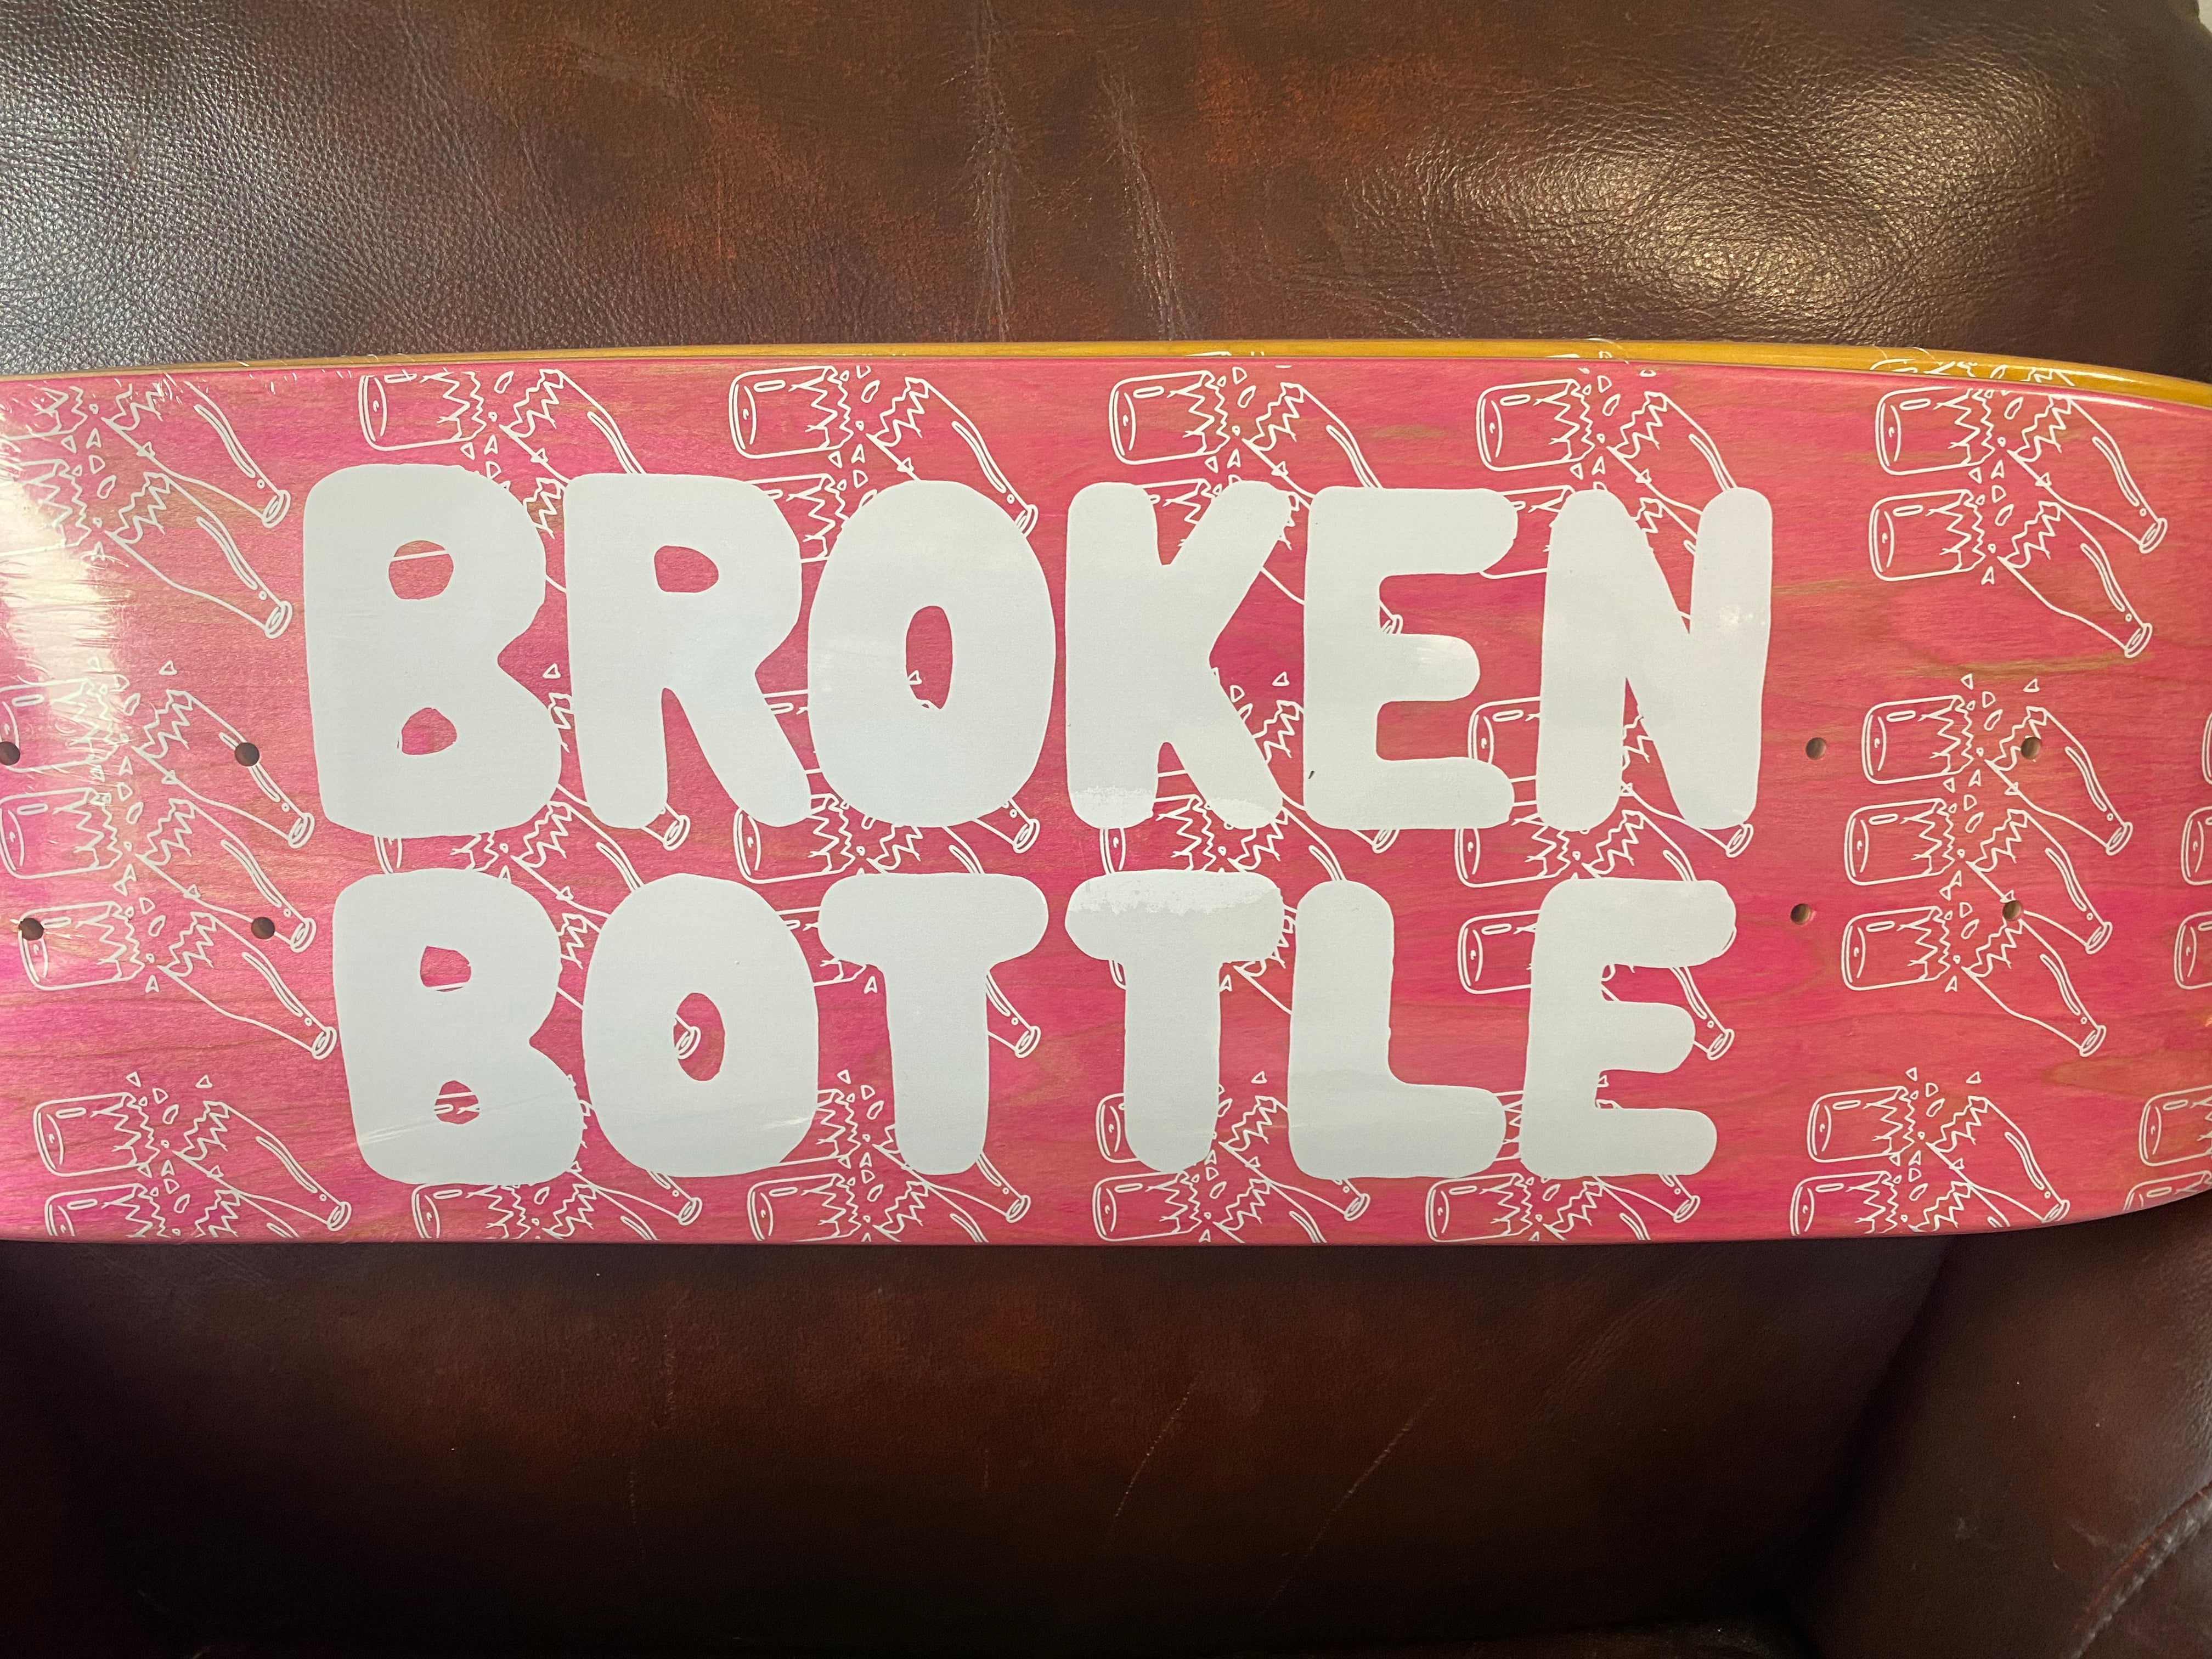 8.75" Shaped Broken Bottle Skateboard Deck